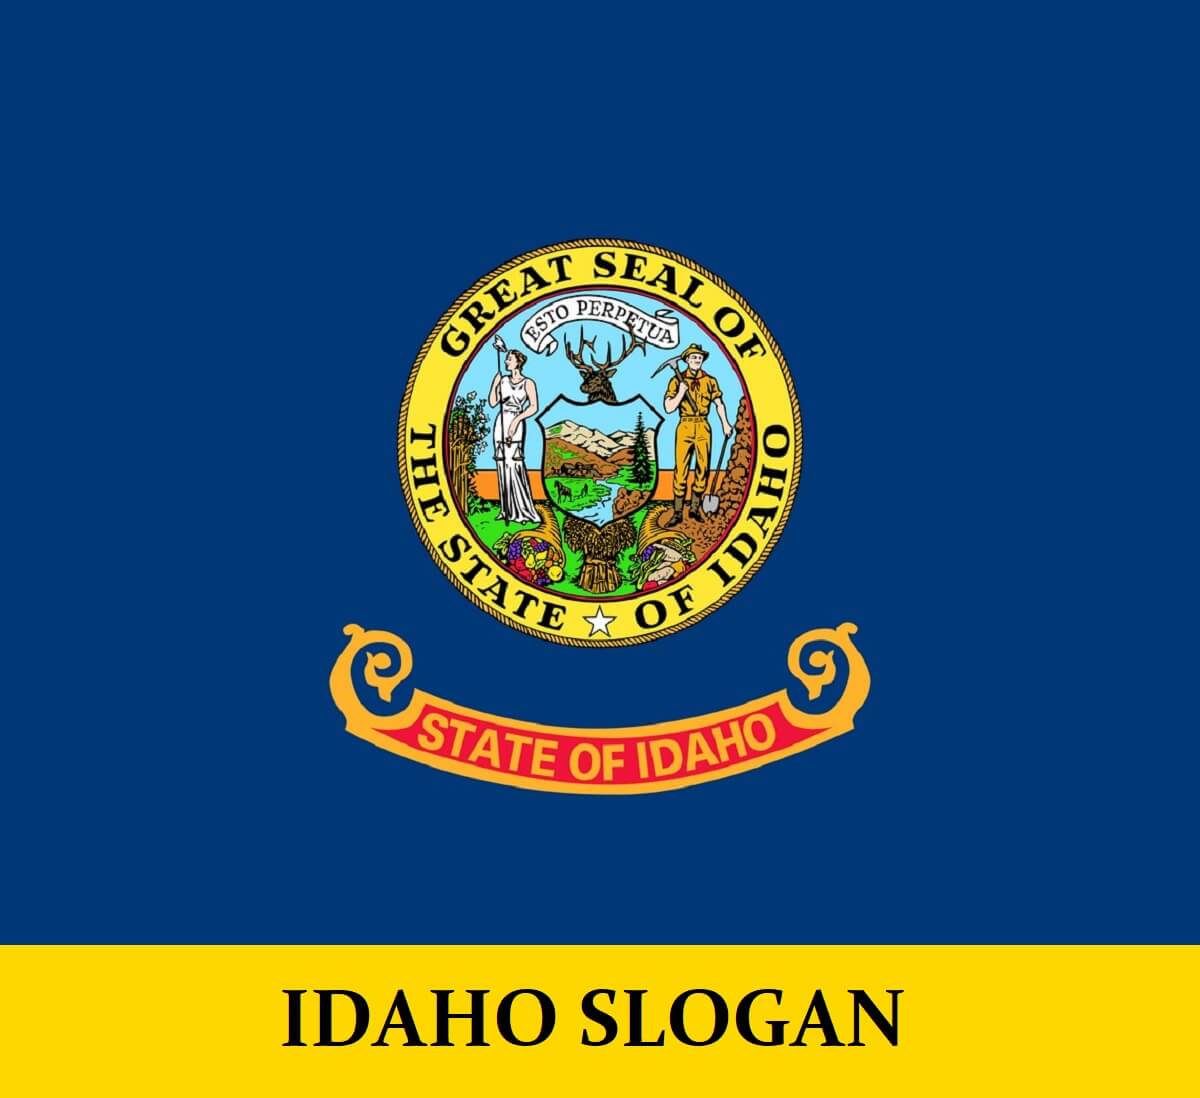 Slogan for Idaho